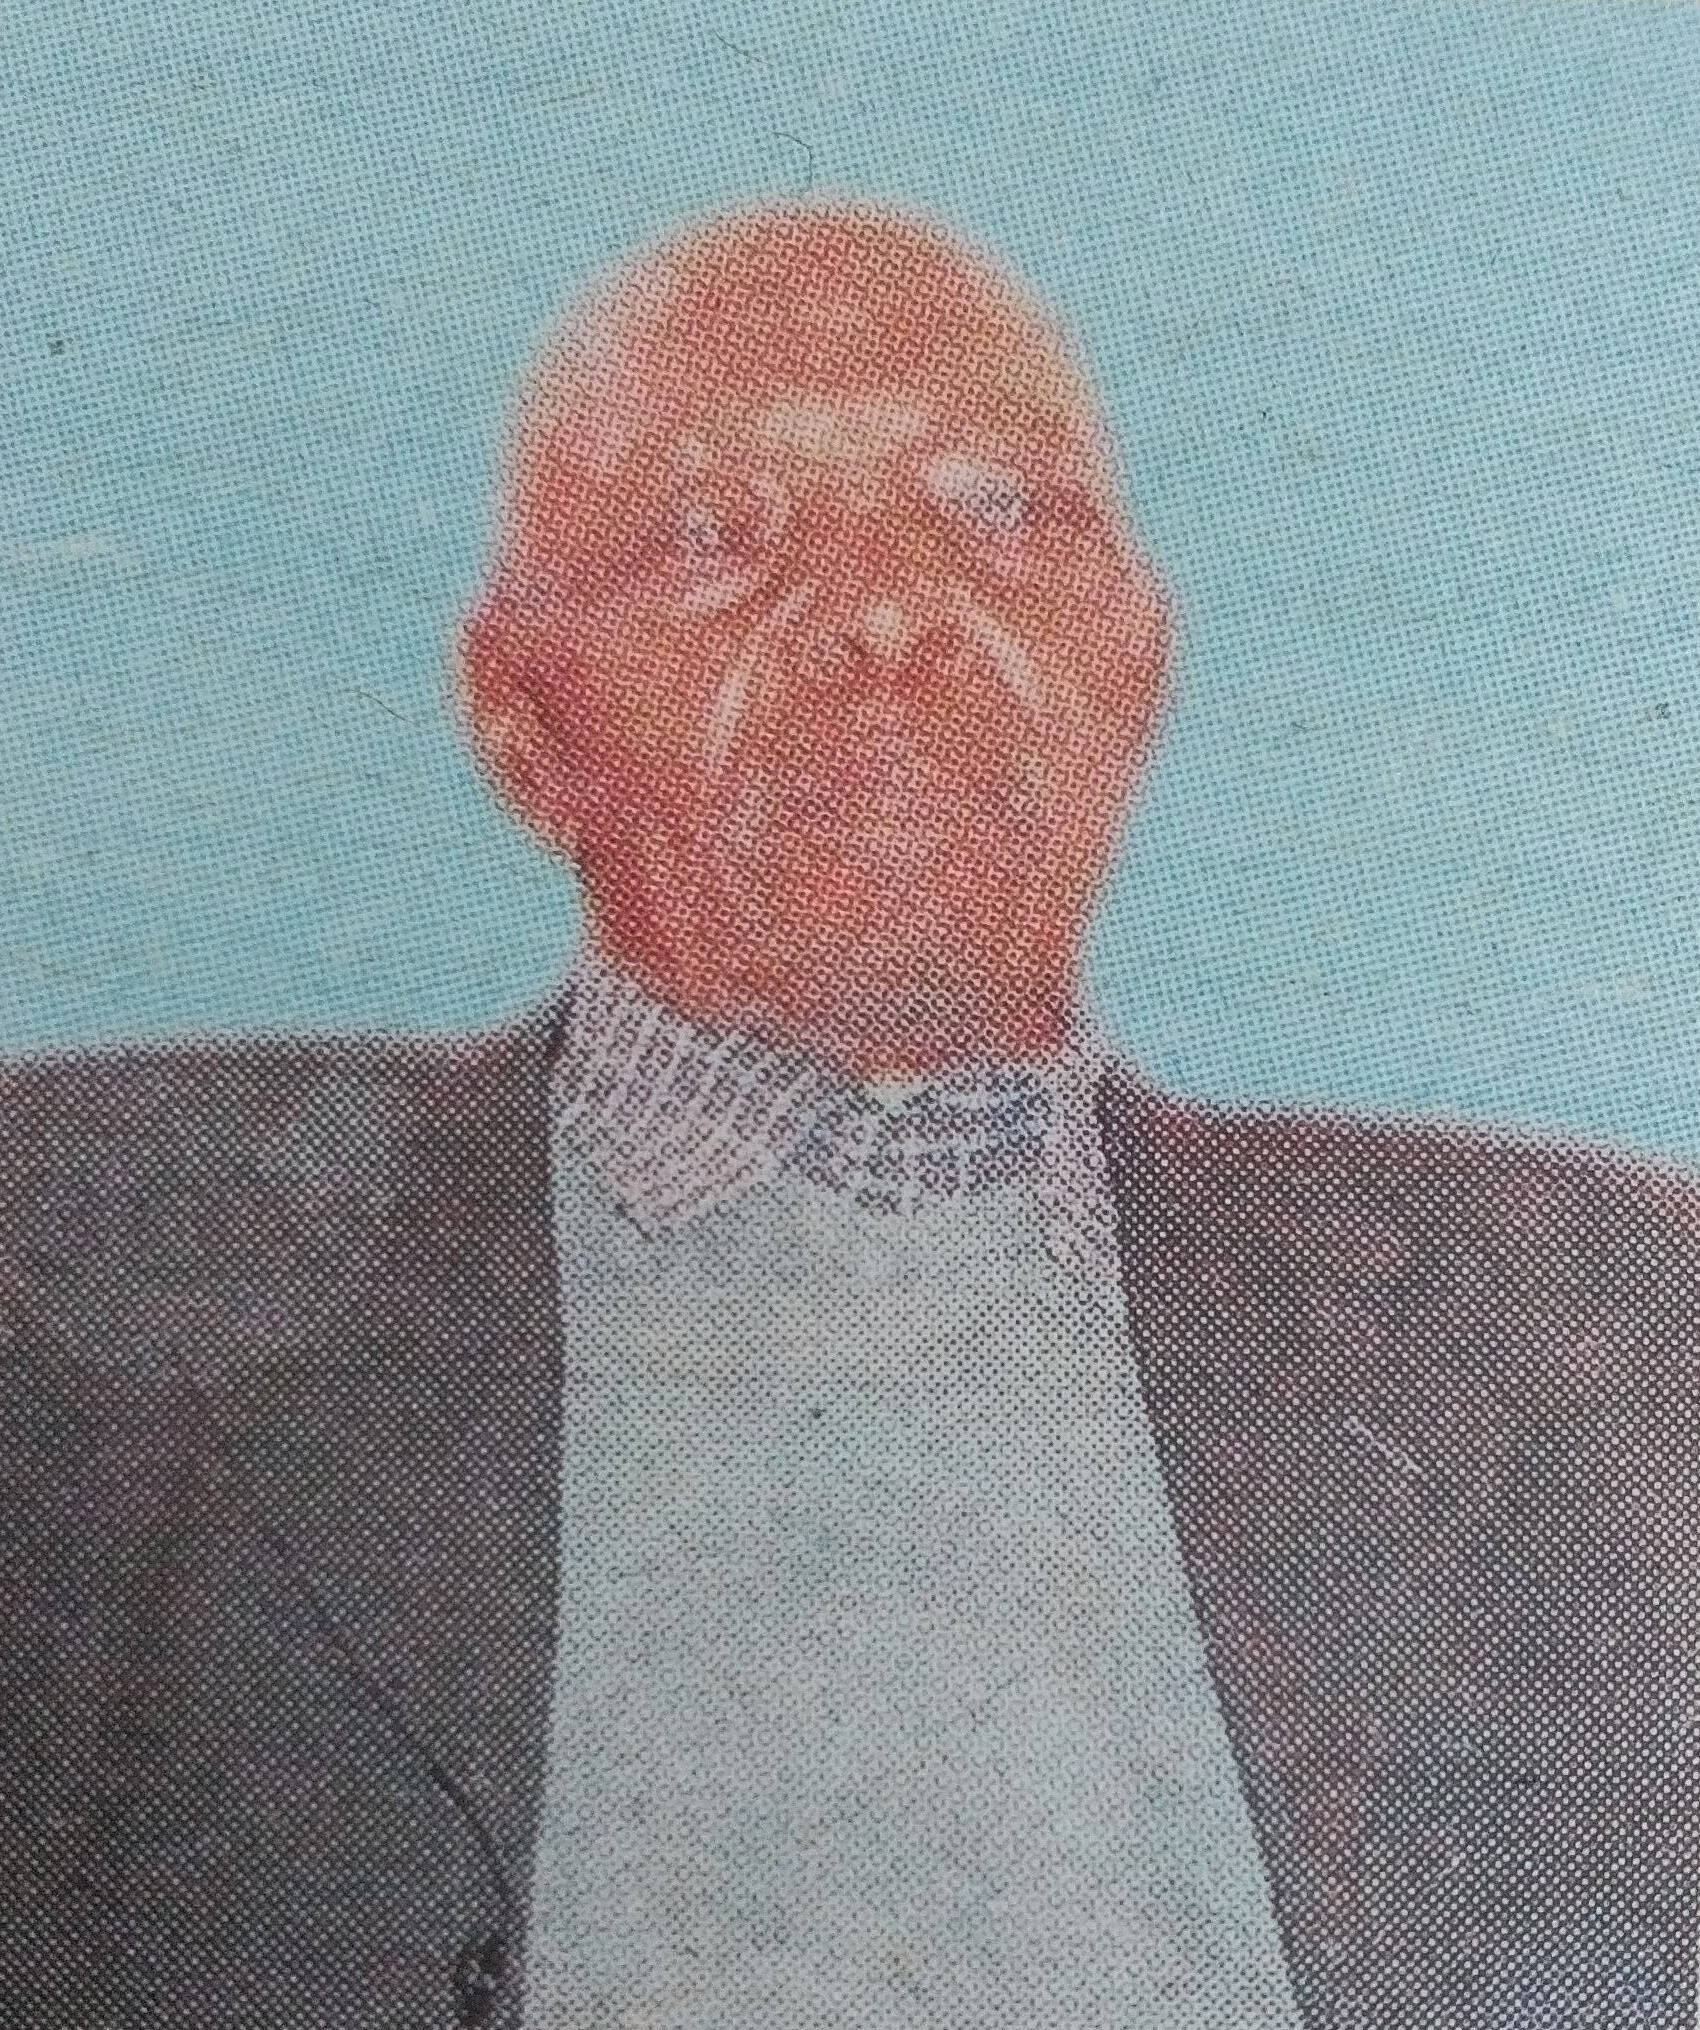 Obituary Image of Hezron Mogaka Bichage (1913-2017)